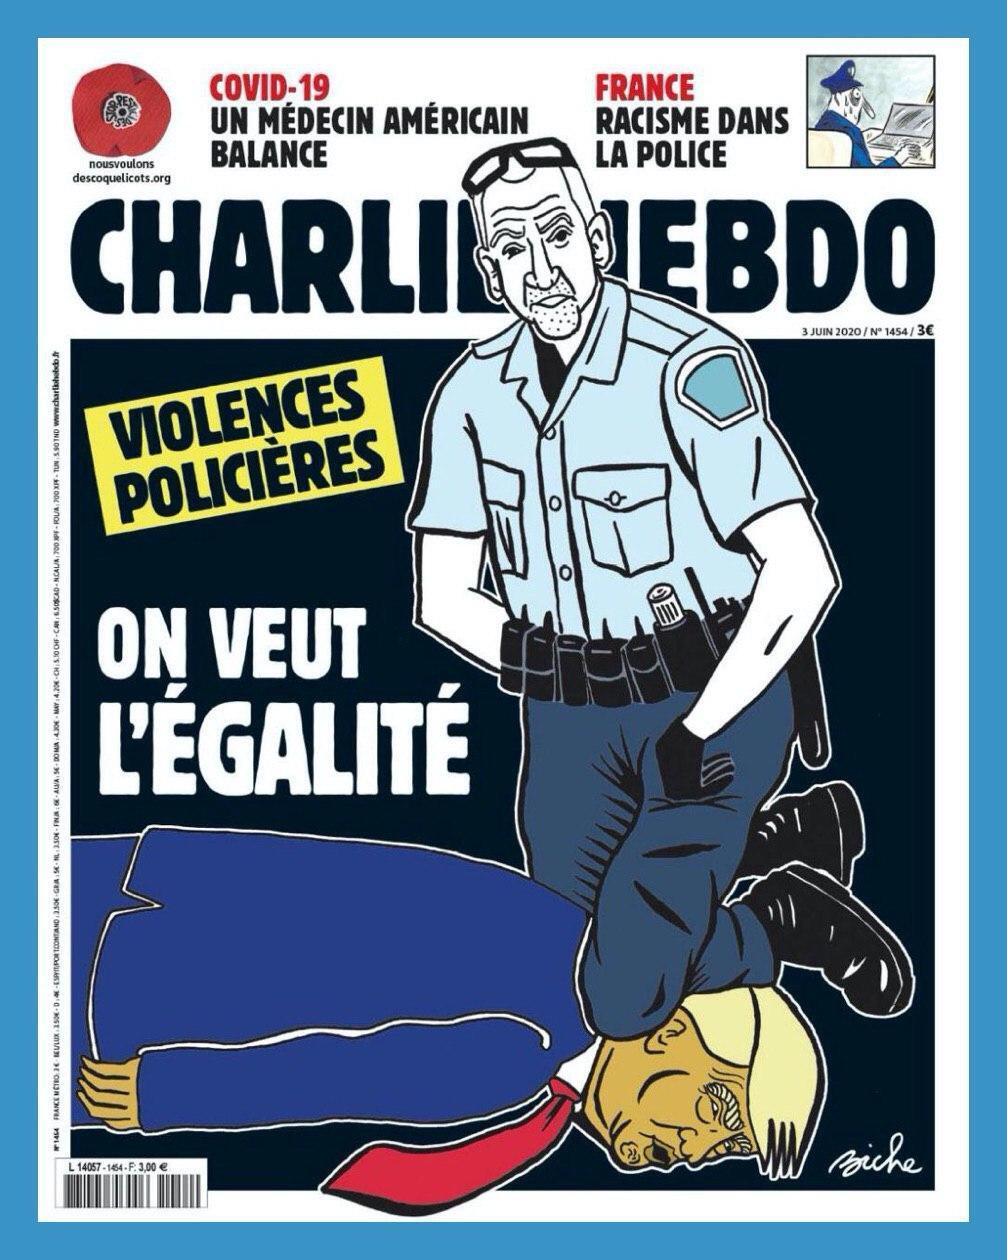 Трампа помістили на обкладинку скандального журналу Charlie Hebdo